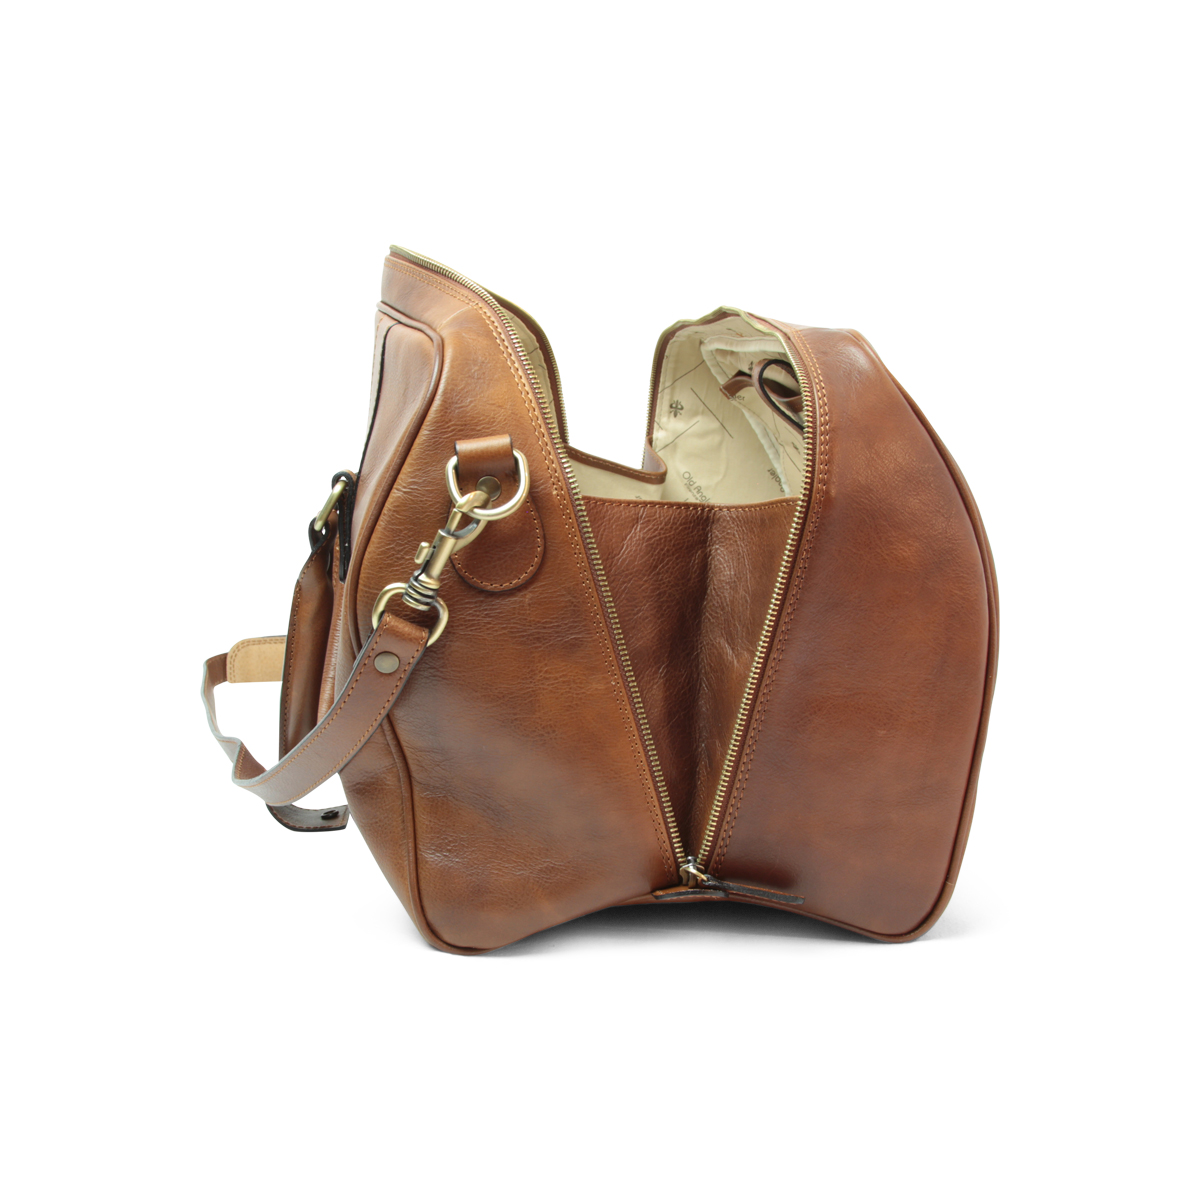 Full grain leather travel bag - chestnut|414861CA|Old Angler Firenze